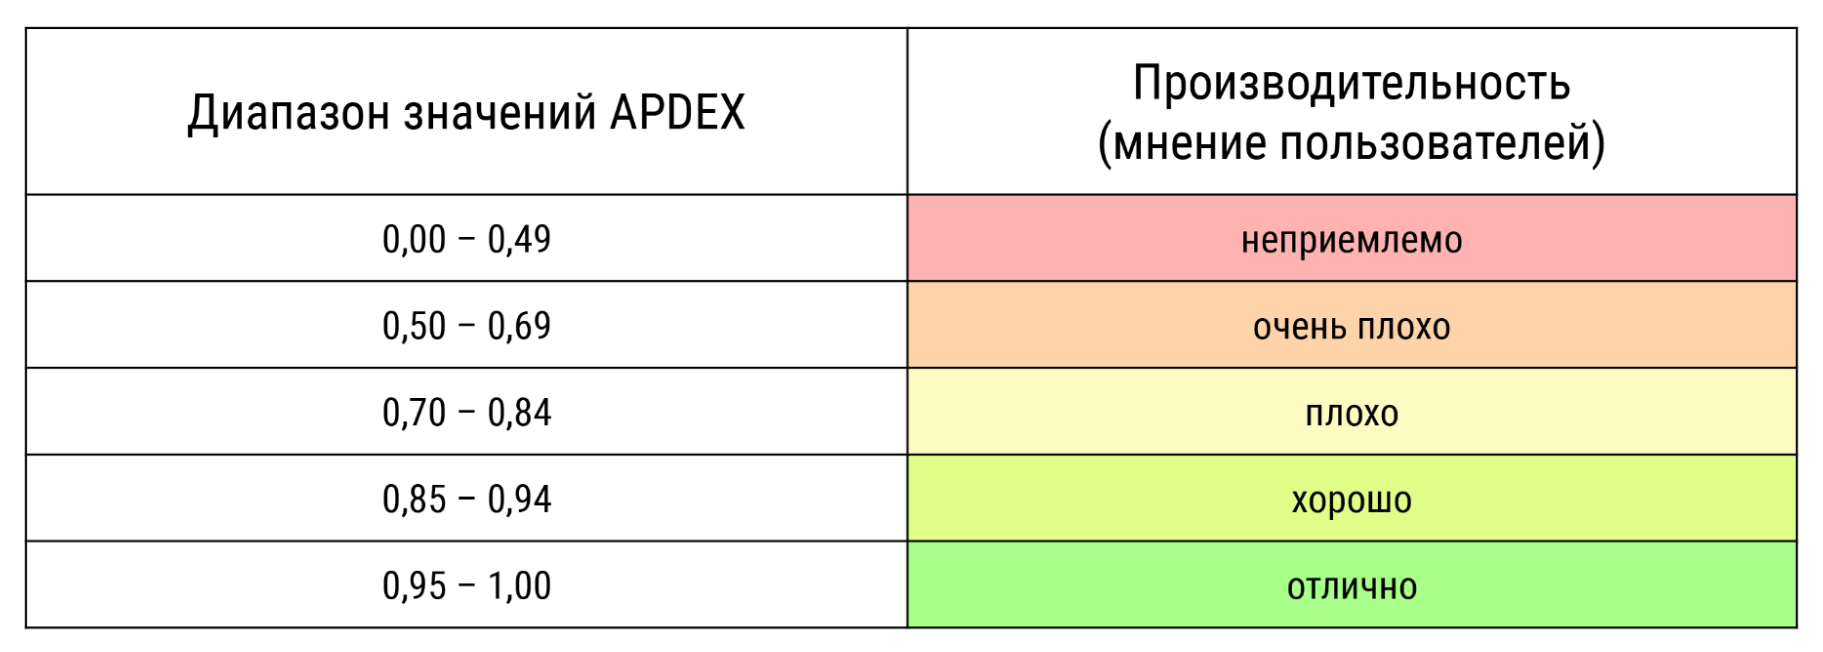 Диапазон значений APDEX